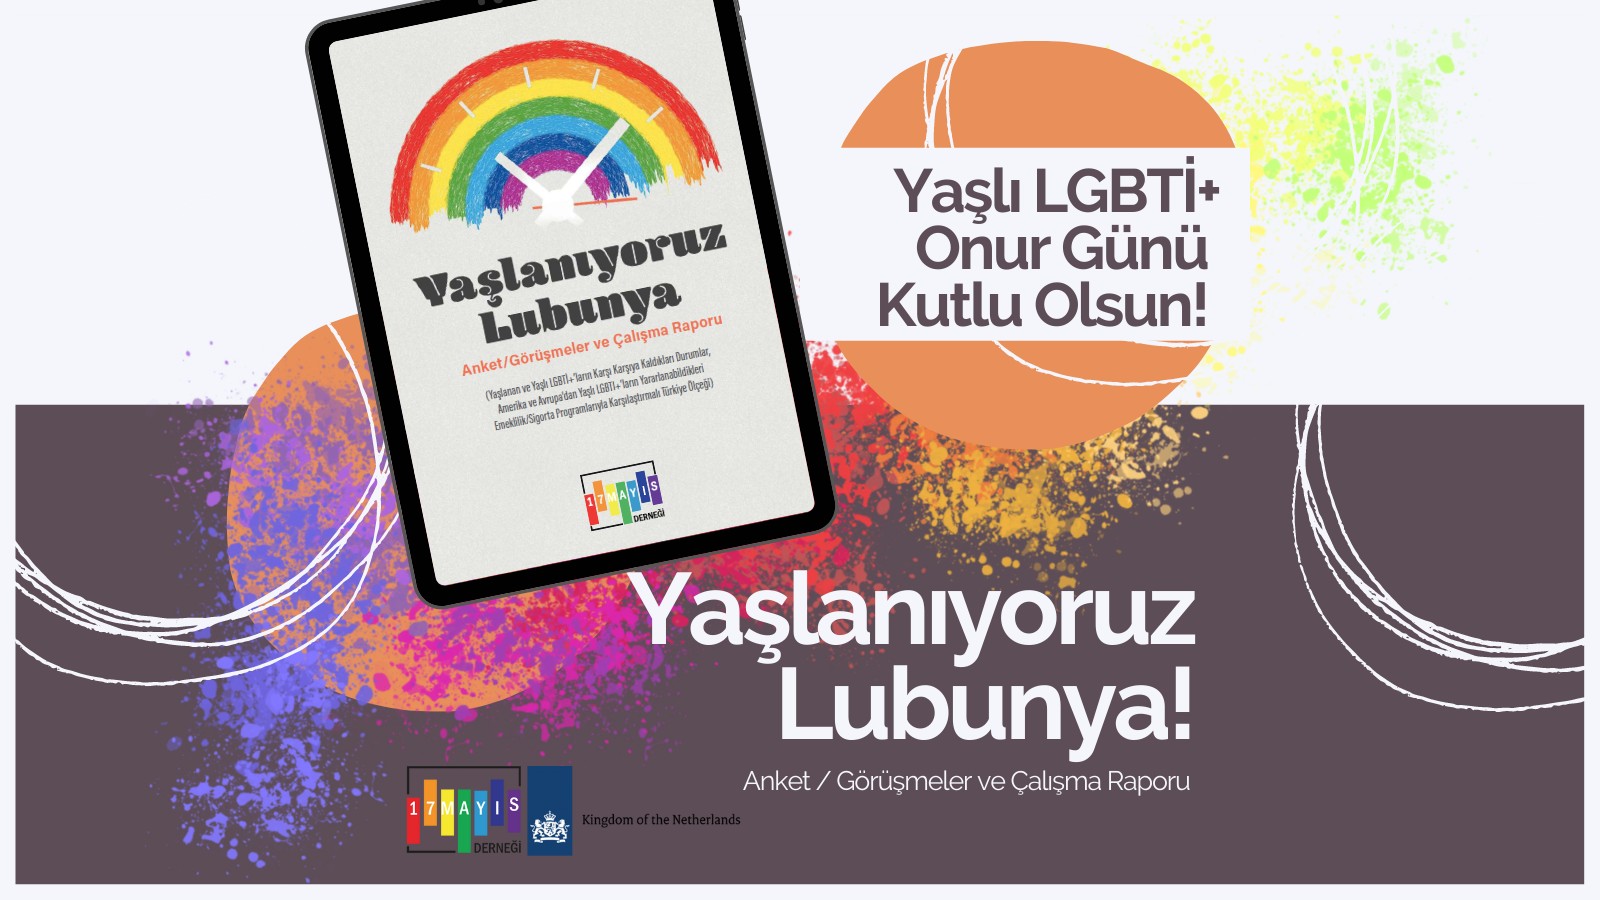 16 Mayıs Yaşlı LGBTİ+ Onur Günü Hediyesi 17 Mayıs’tan: "Yaşlanıyoruz Lubunya!" | Kaos GL - LGBTİ+ Haber Portalı Haber